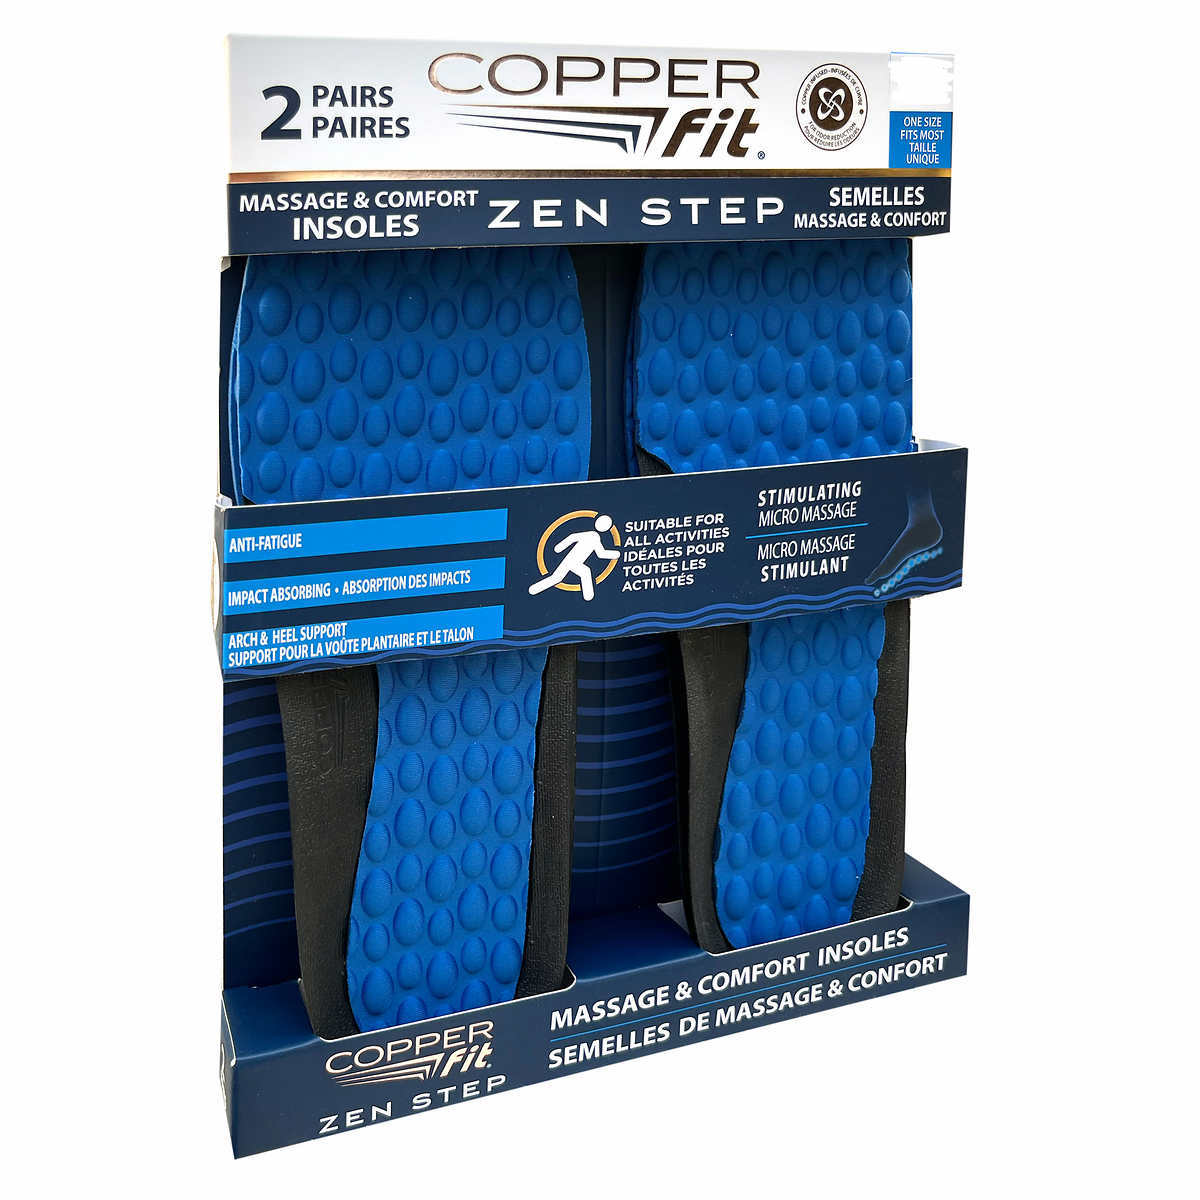 copper-fit-2-paires-semelles-massage-confort-comfort-insoles-2